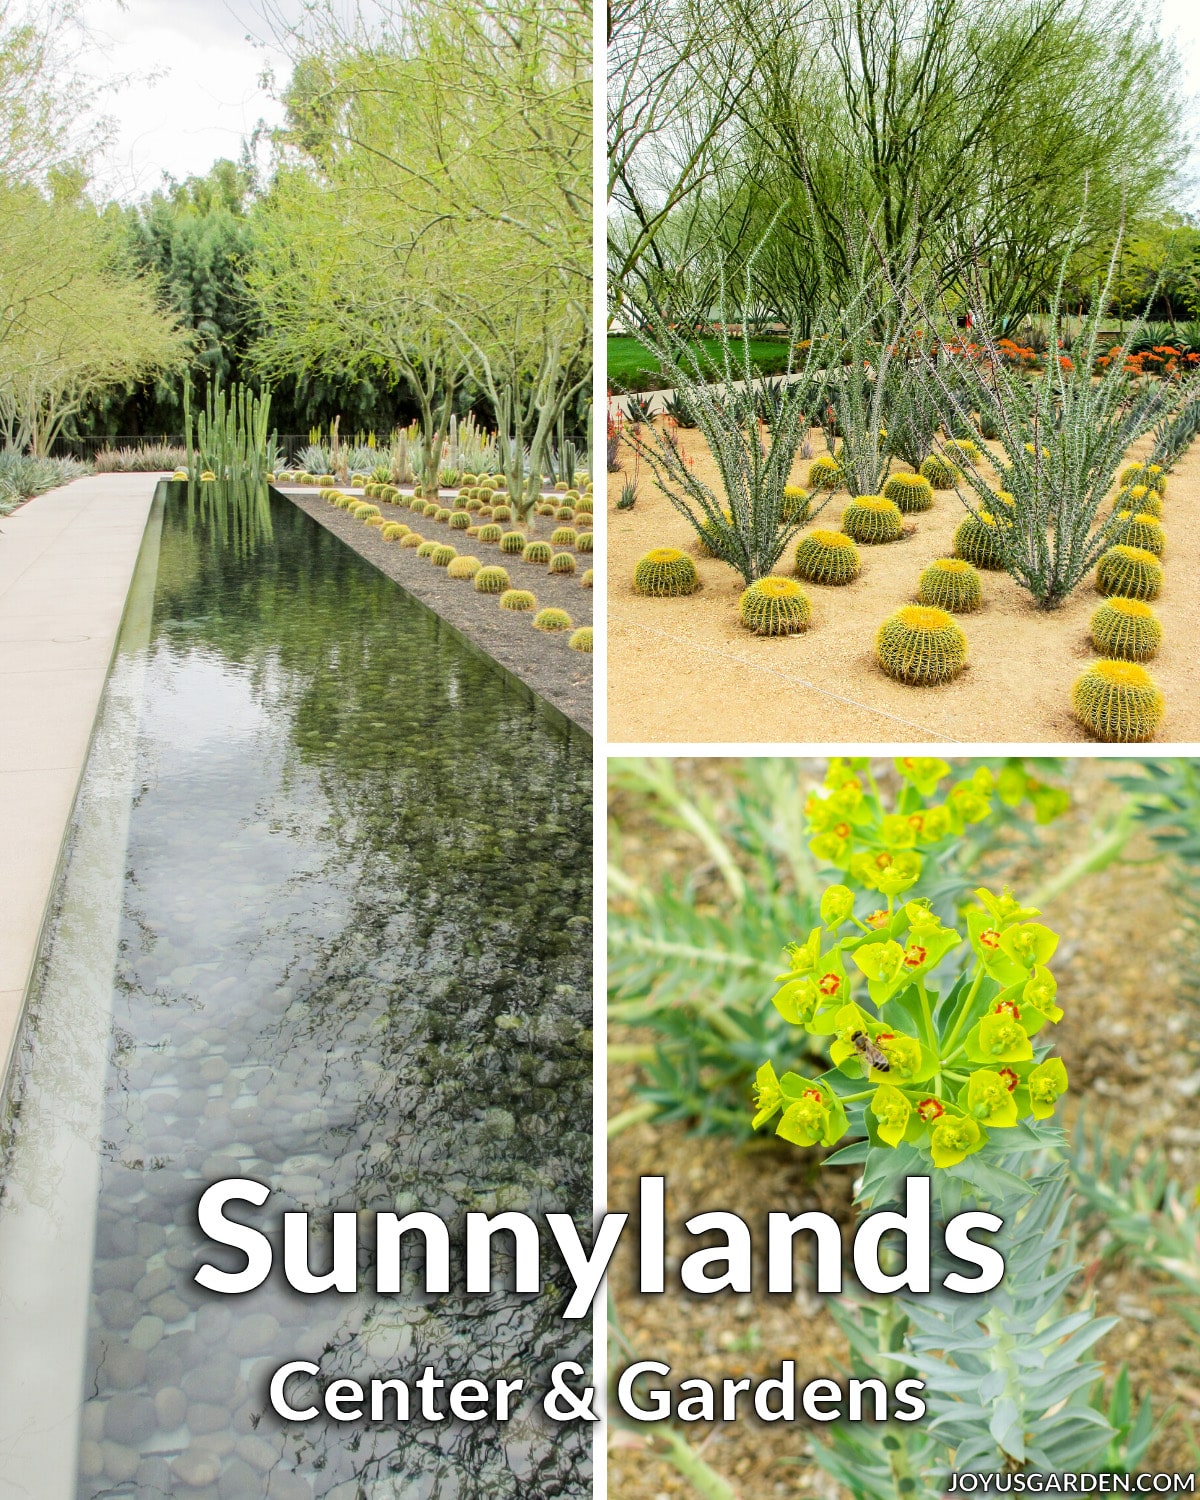  Center in vrtovi Sunnylands v Palm Springsu